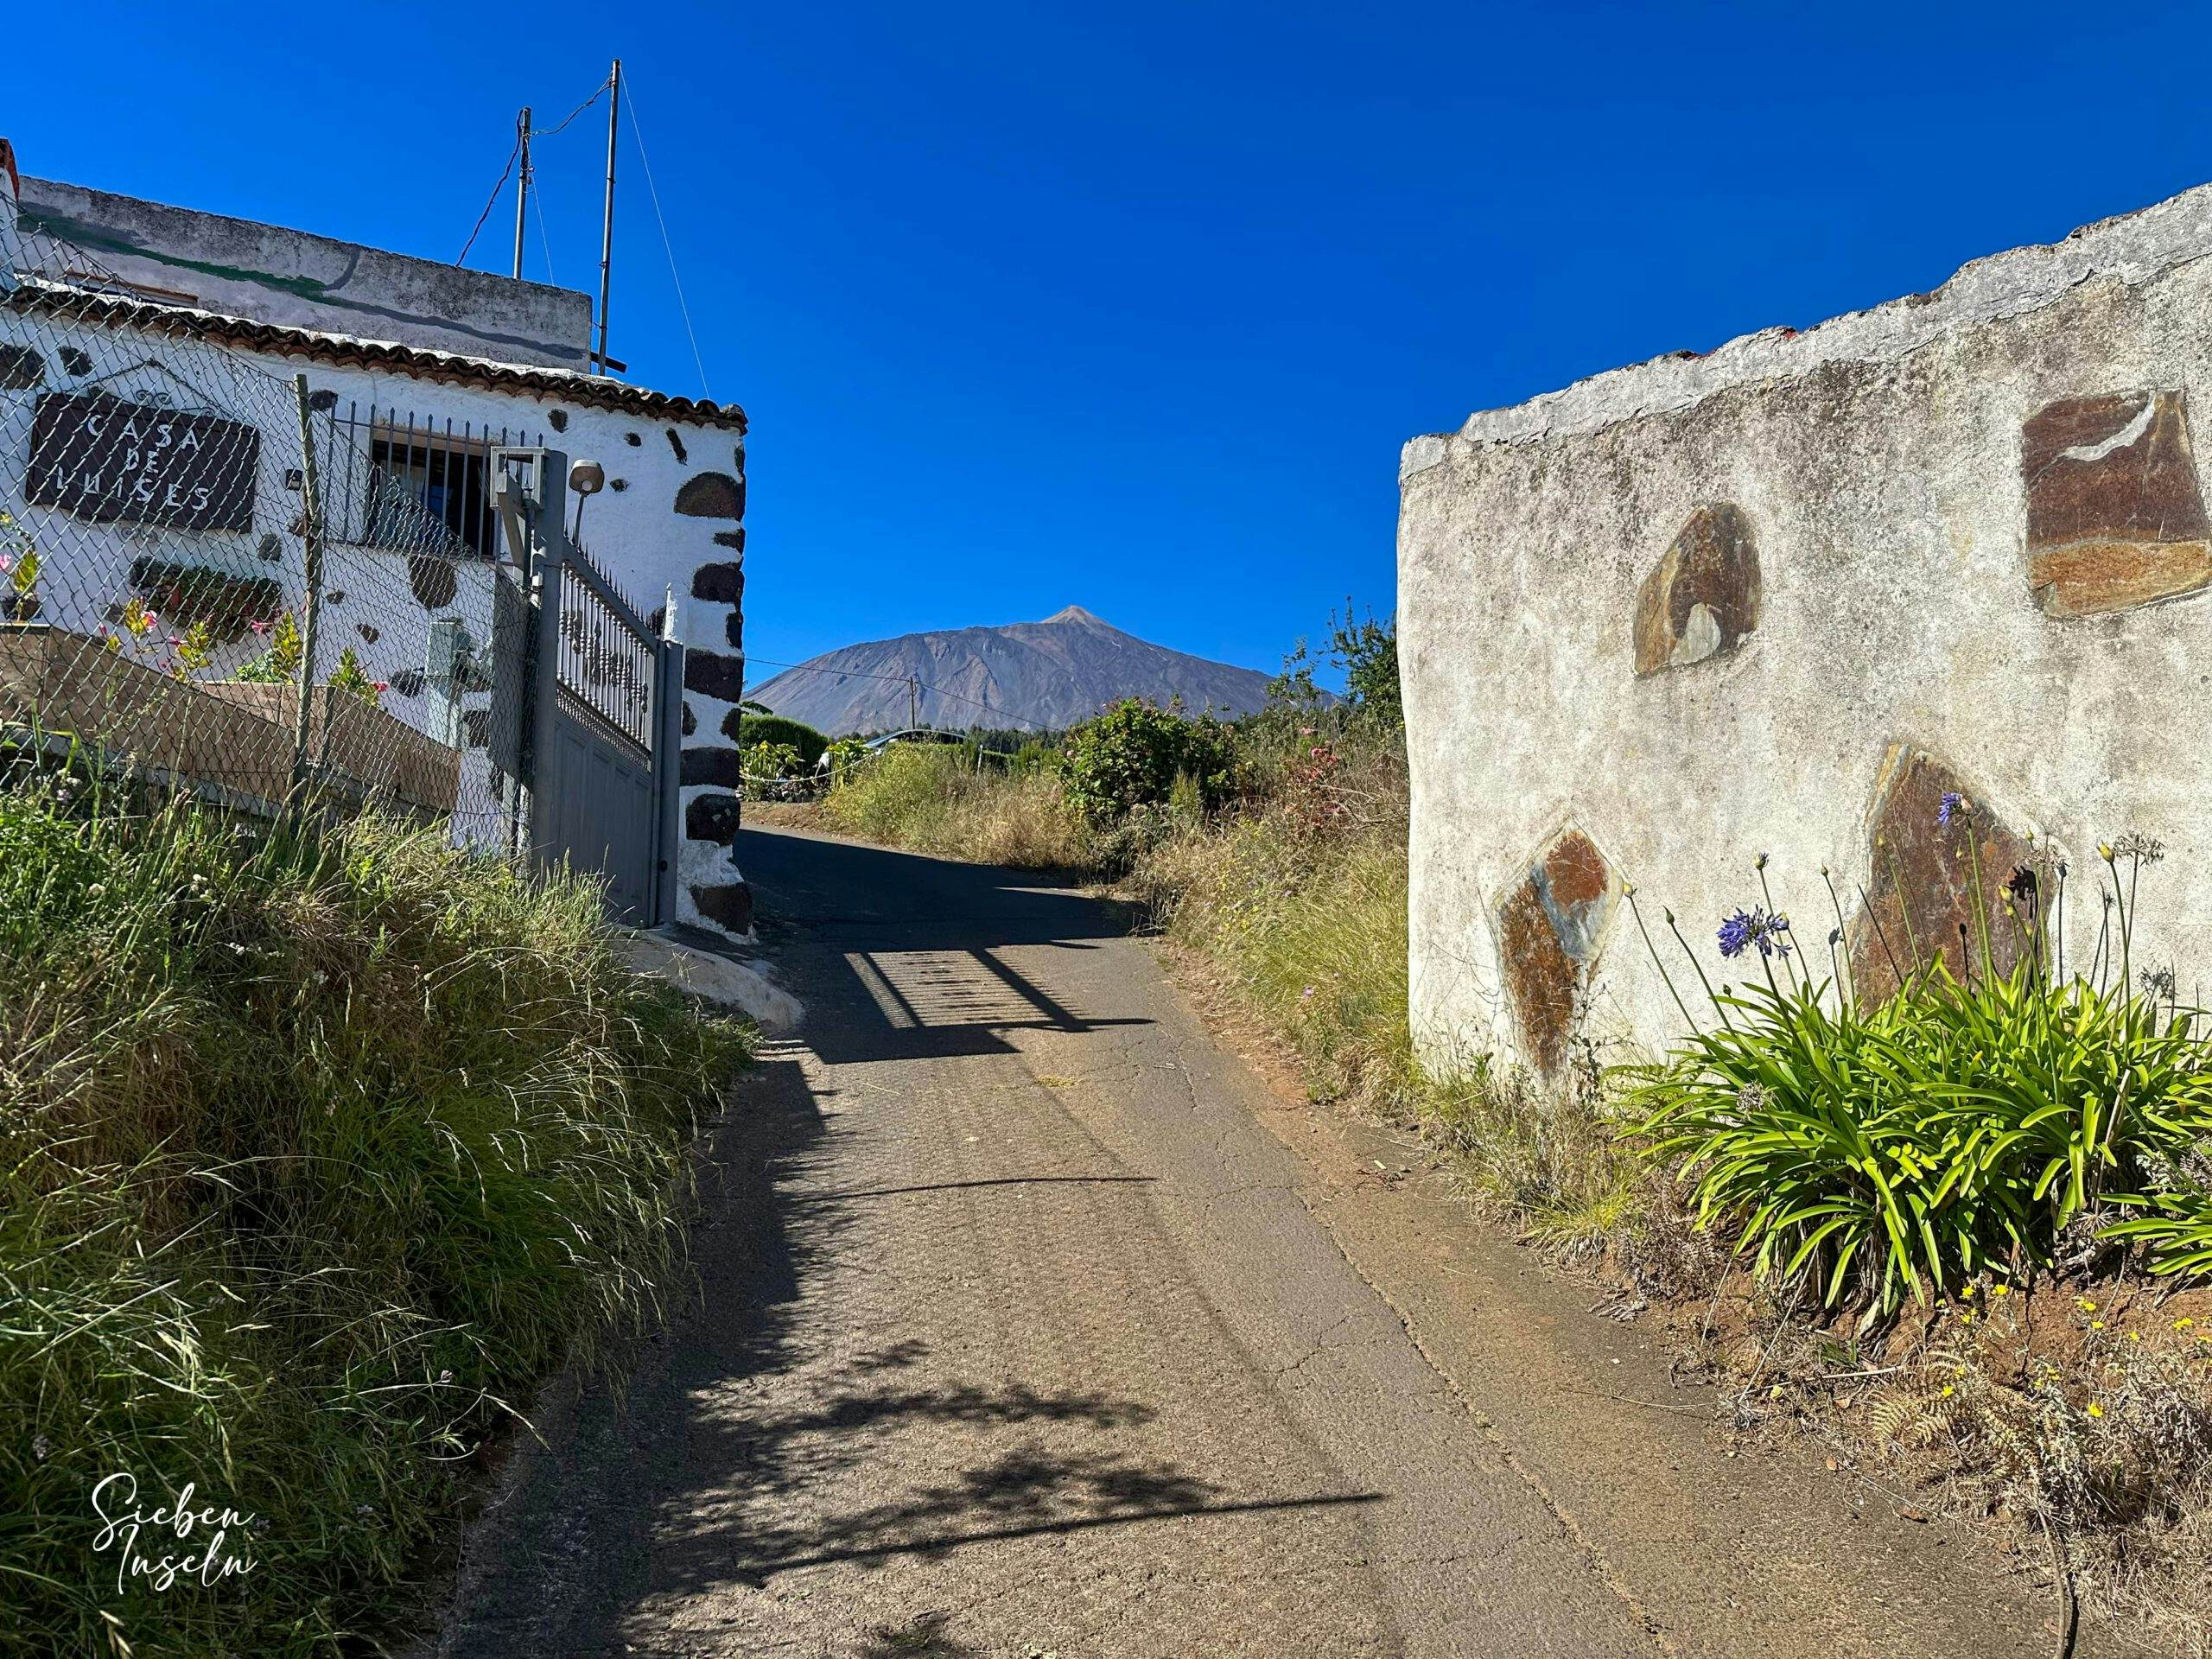 Zwischen diesen Häusern beginnt der Aufstiegsweg, der von der Straße TF-344 am Casa Rural vorbei abzweigt